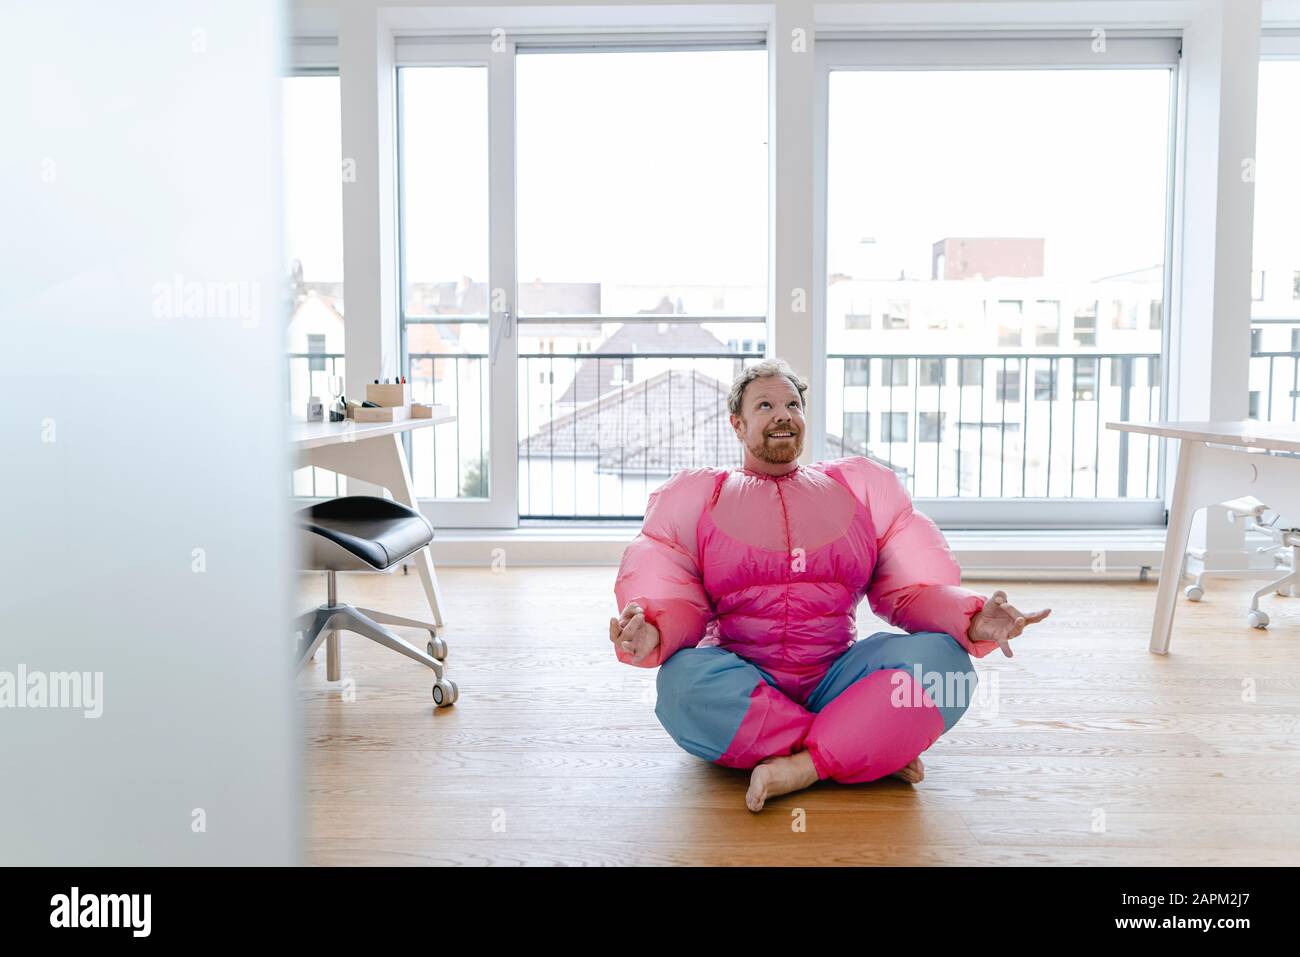 Geschäftsmann im Büro mit pinkfarbenem Bodybuilder-Kostüm, das Yoga praktiziert Stockfoto